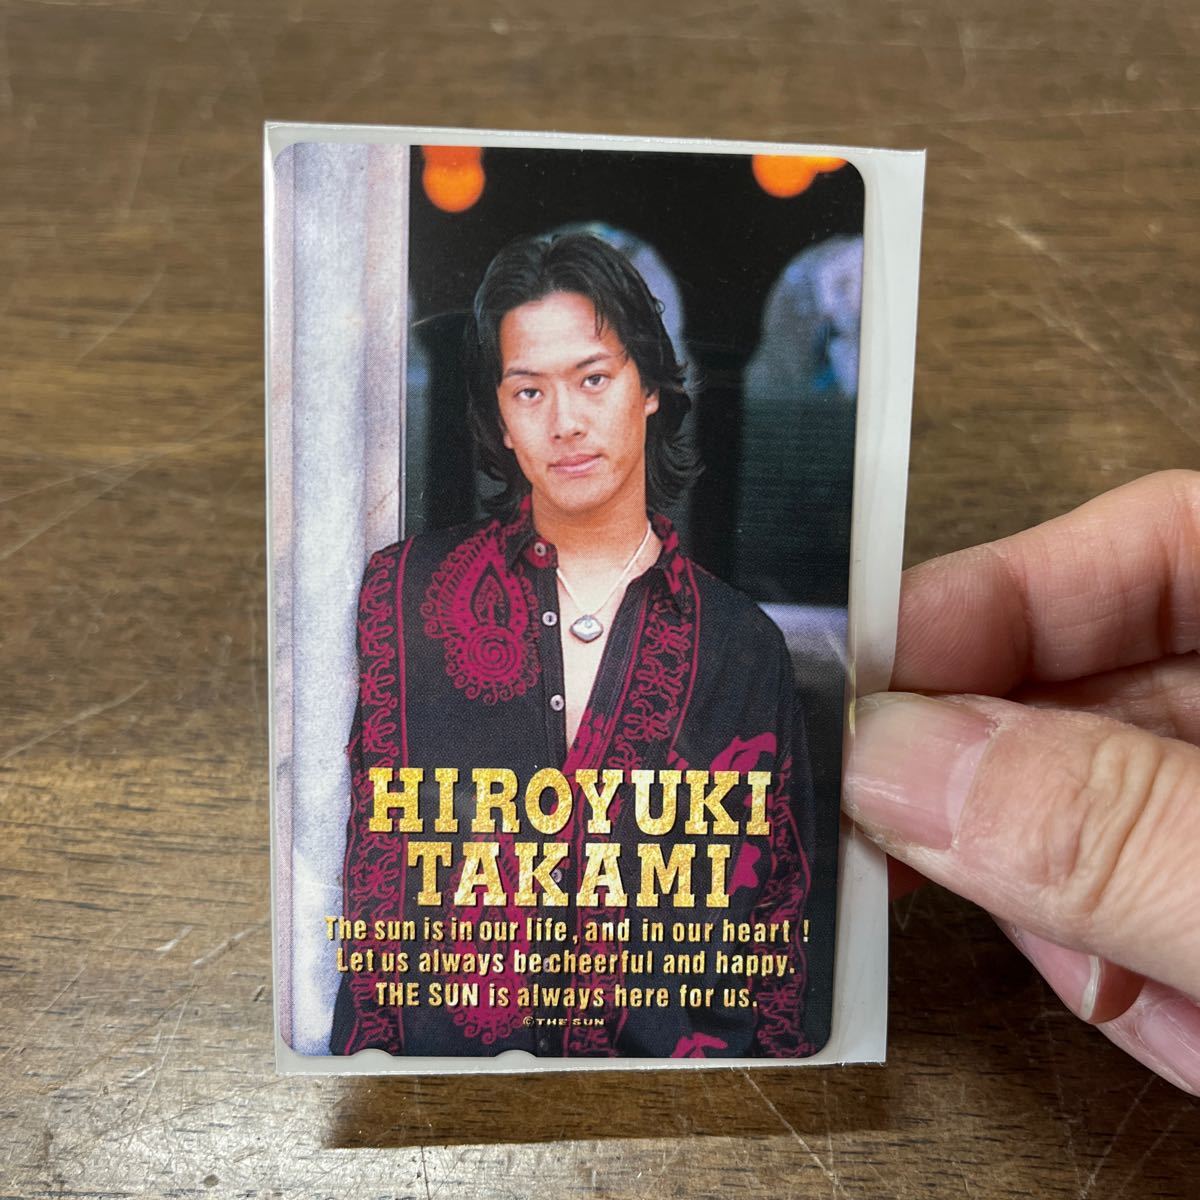  телефонная карточка Takami Hiroyuki THE SUN 50 частотность телефонная карточка 3 шт. комплект не использовался вентилятор коллекция редкость * кошка pohs 385 иен отправка (4-3